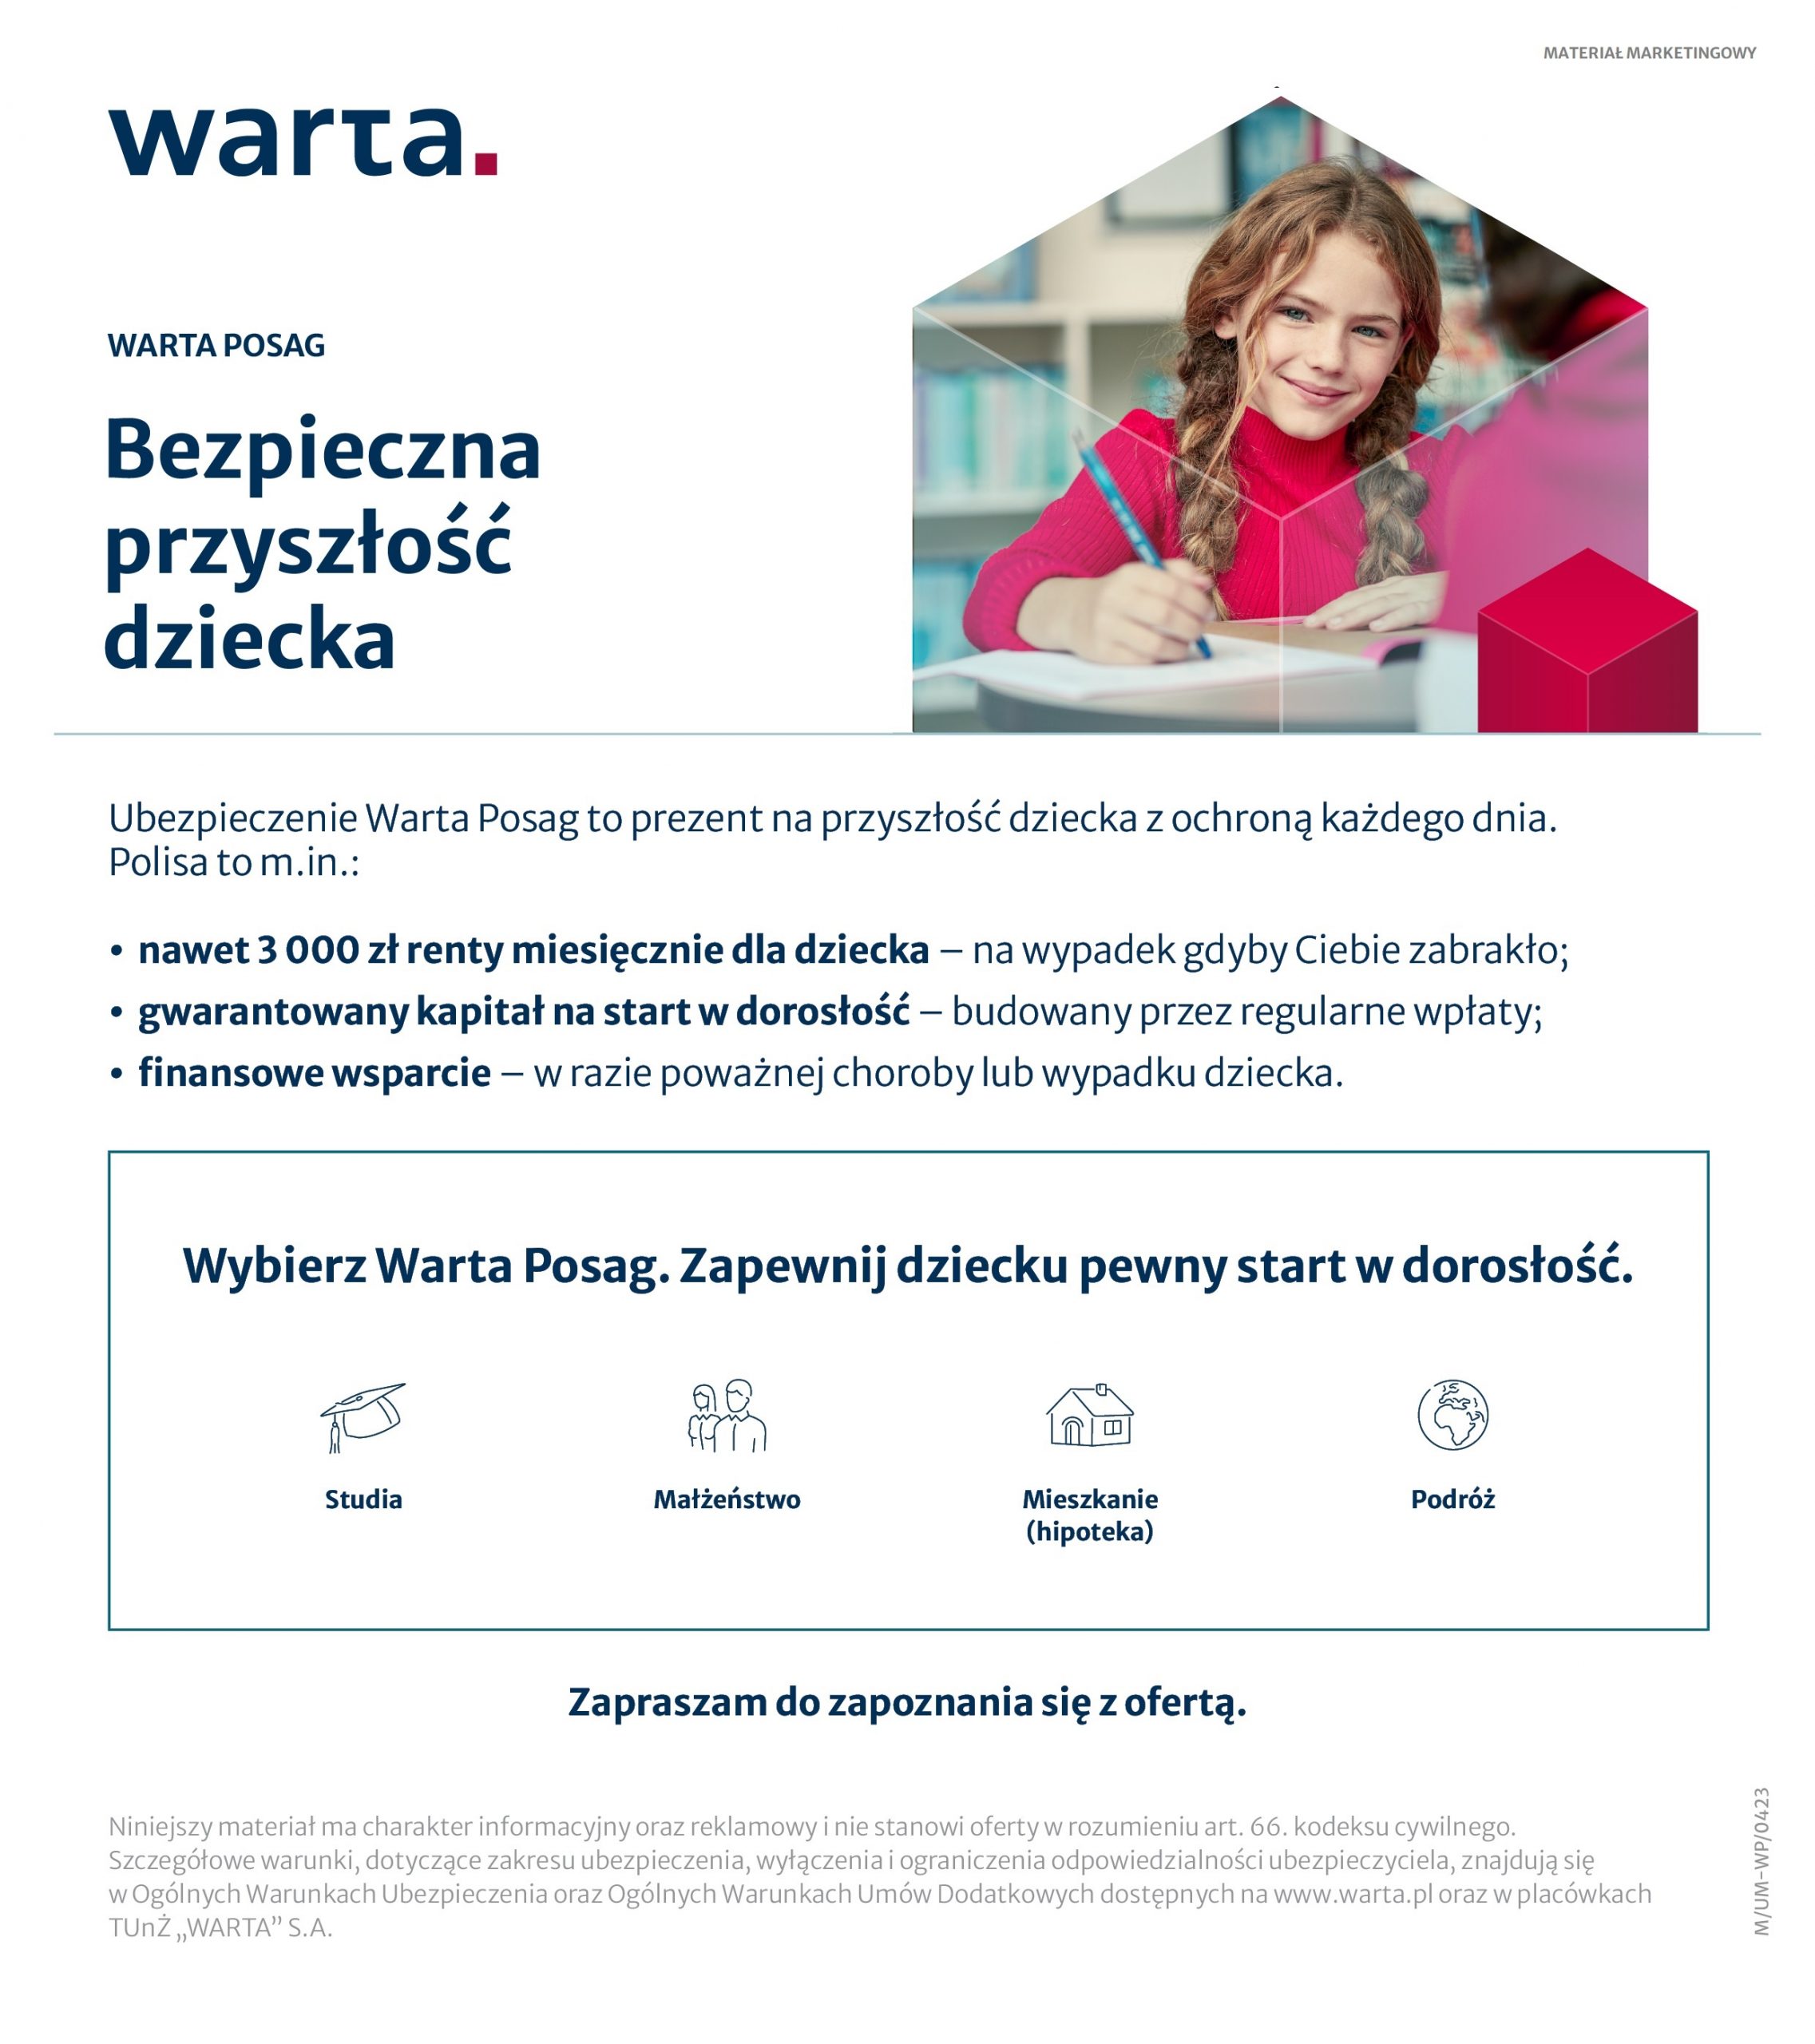 Lesław Ziętek: - Program Warta Posag to inwestycja w przyszłość naszych dzieci [ROZMOWA]